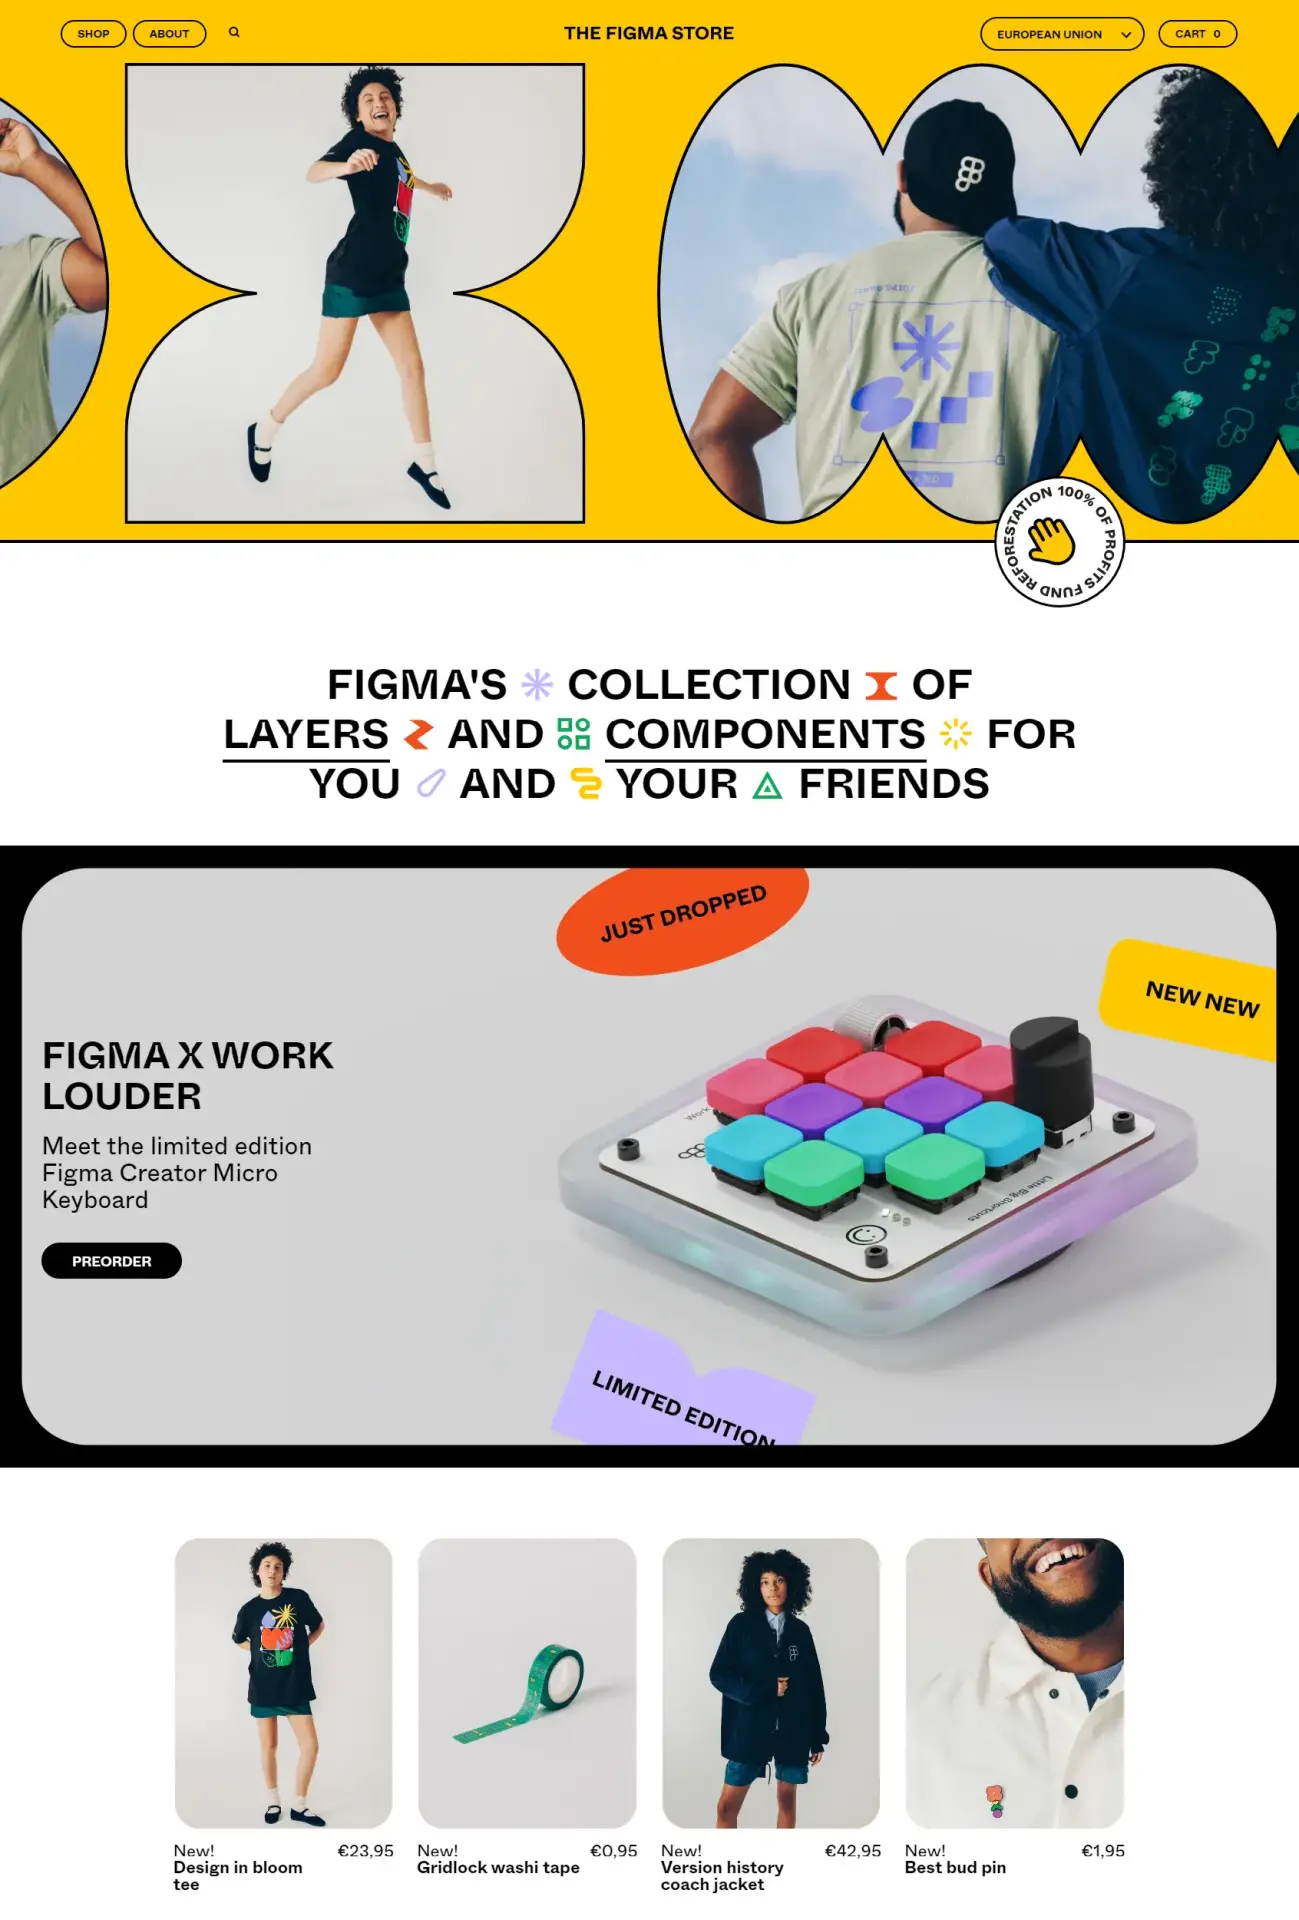 Blogduwebdesign inspiration design site web ecommerce figma store